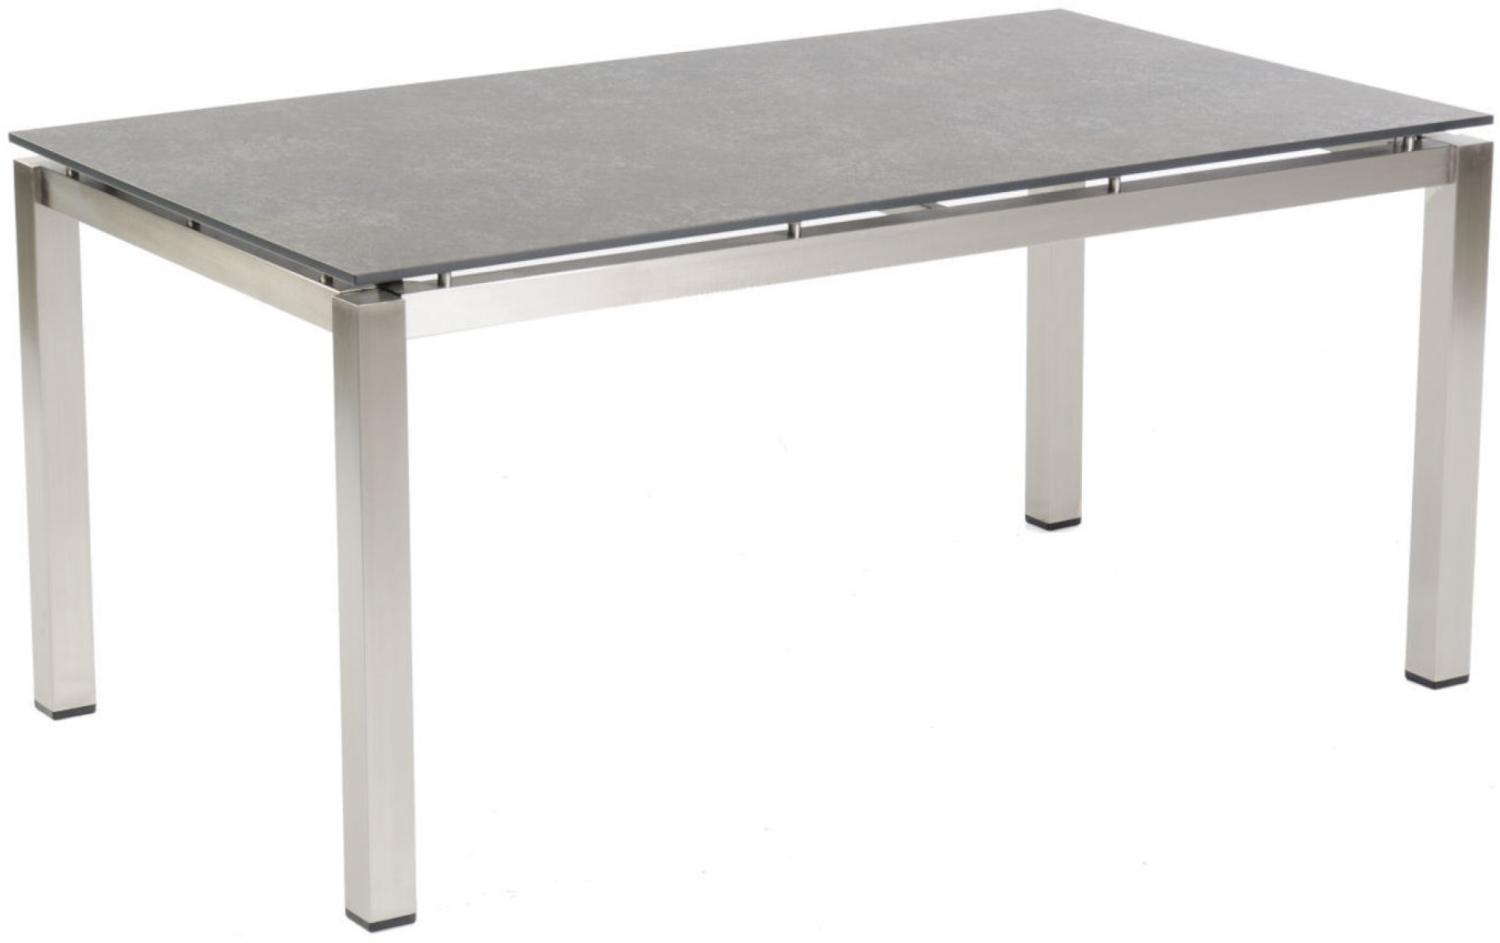 Sonnenpartner Gartentisch Base 160x90 cm Edelstahl Tischsystem Tischplatte Compact HPL Shiplap-Pinie 80051001 Bild 1